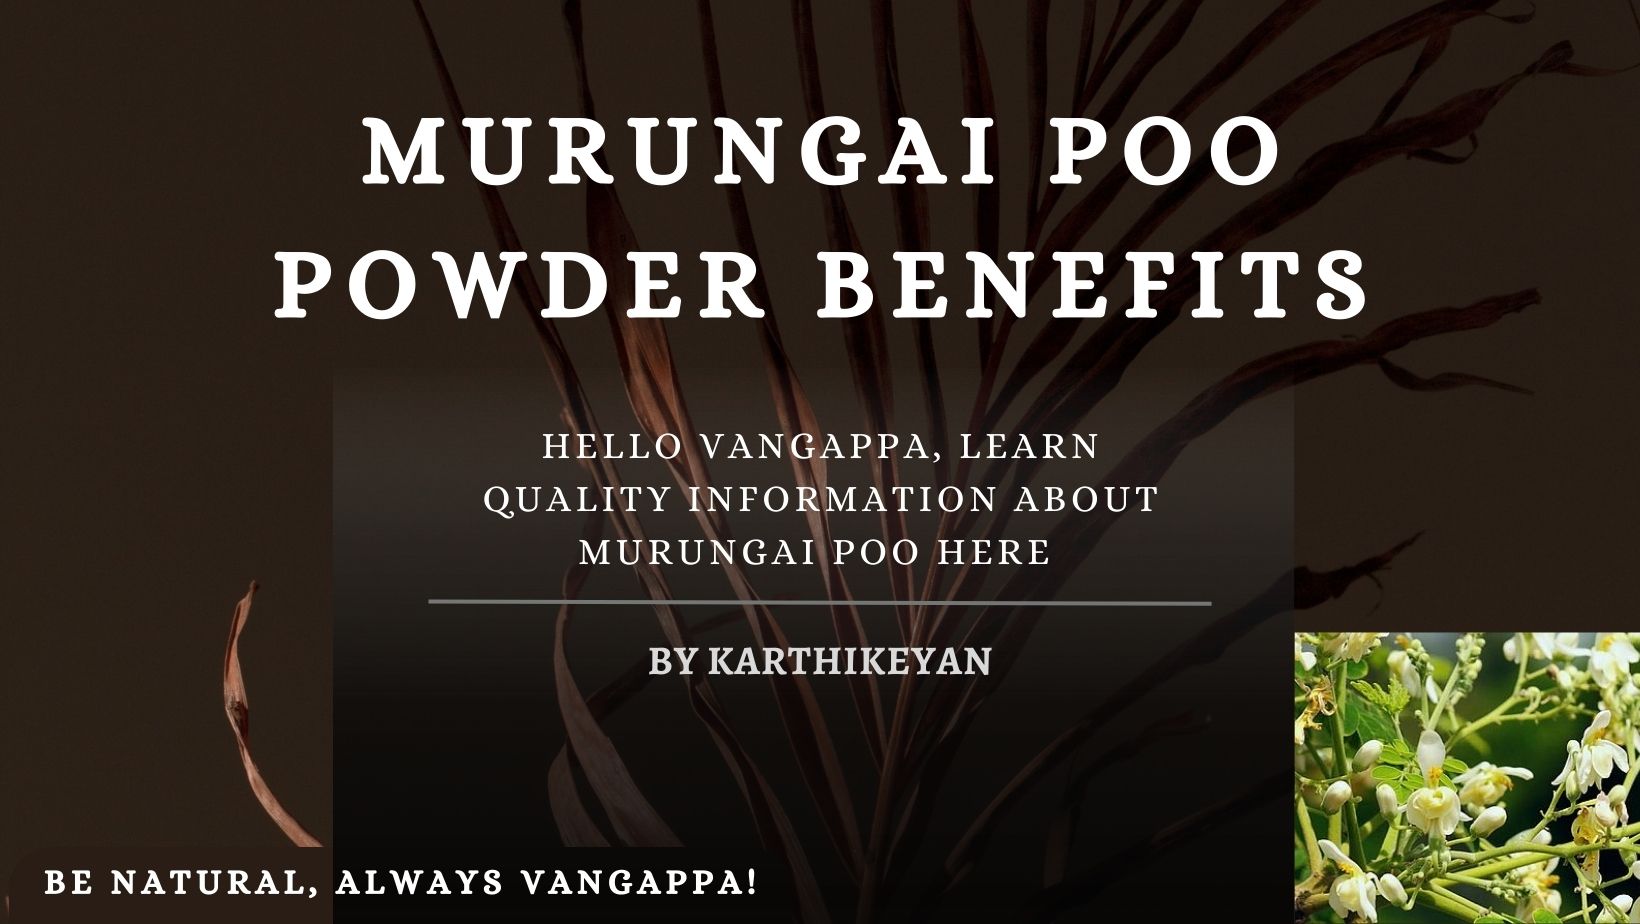 Murungai poo powder benefits